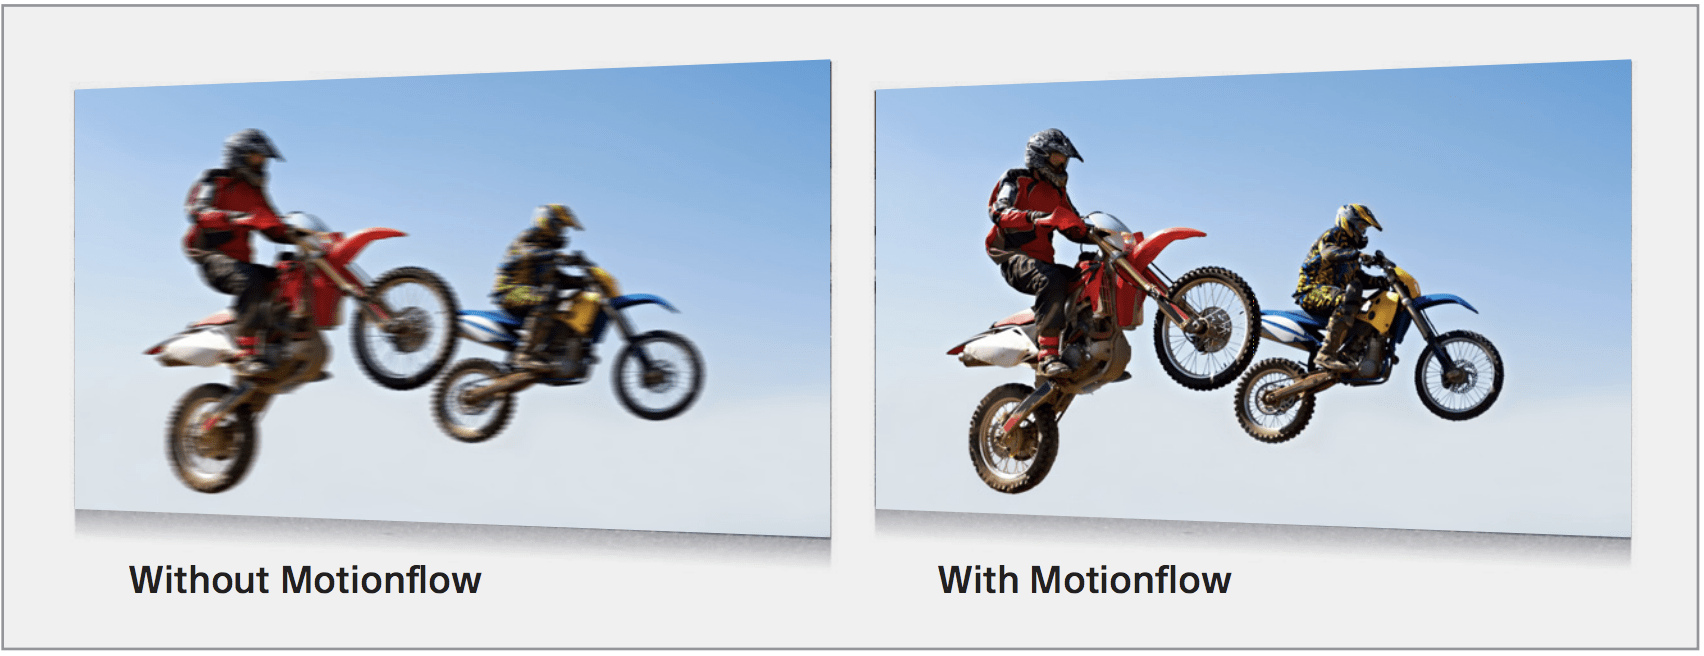 Motionflow Effekt 4K Panel Sony Laserbeamer VPL-VW760ES